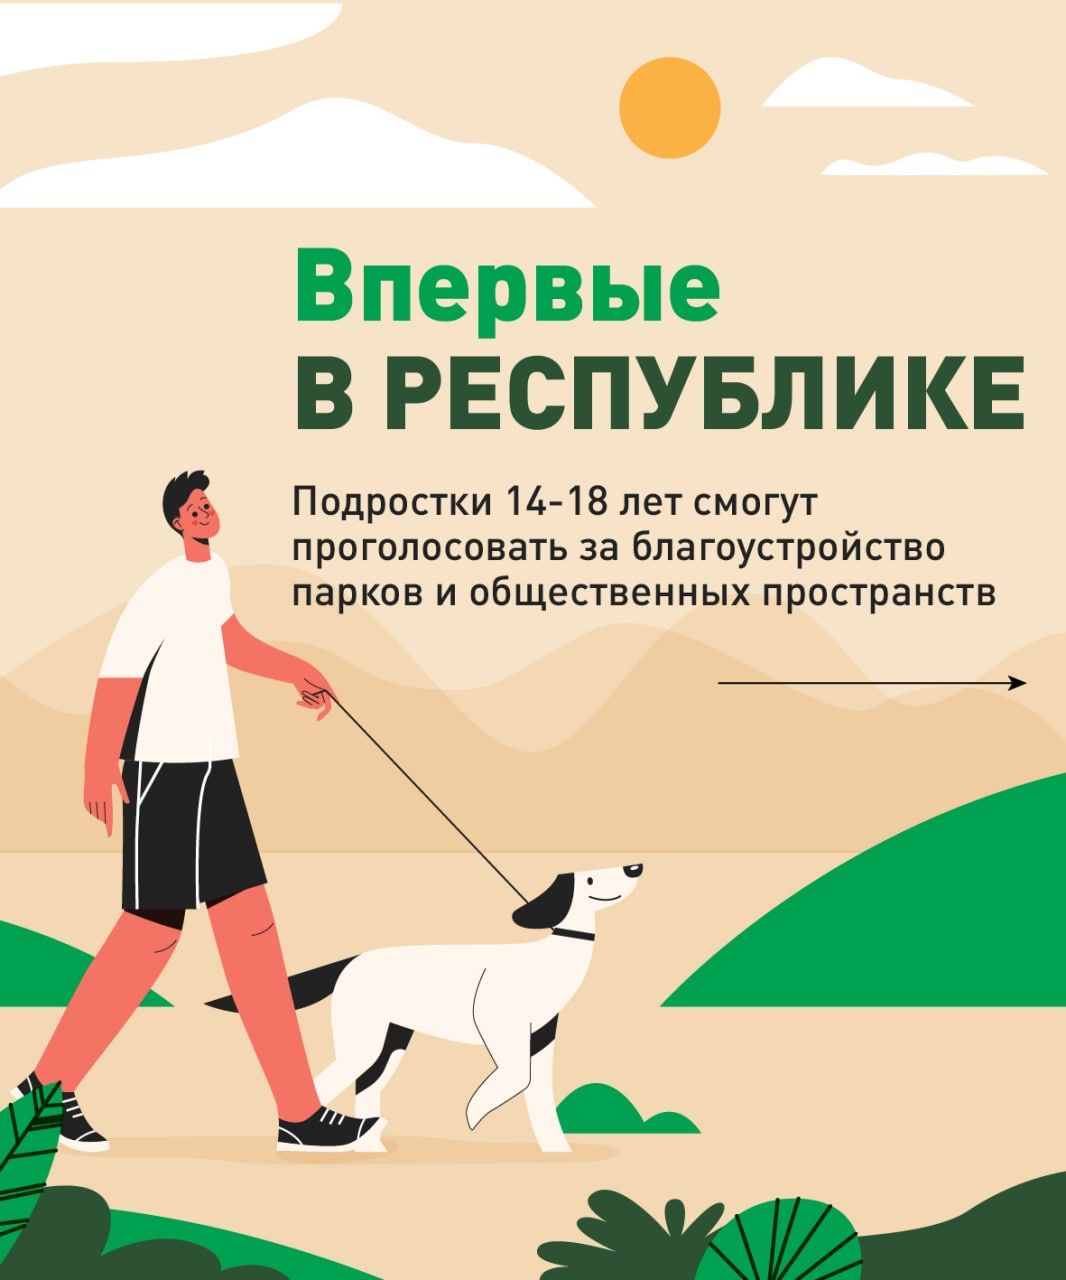 Татарстан халкы 2023 елда төзекләндереләчәк ишегалды яки паркны сайлый ала